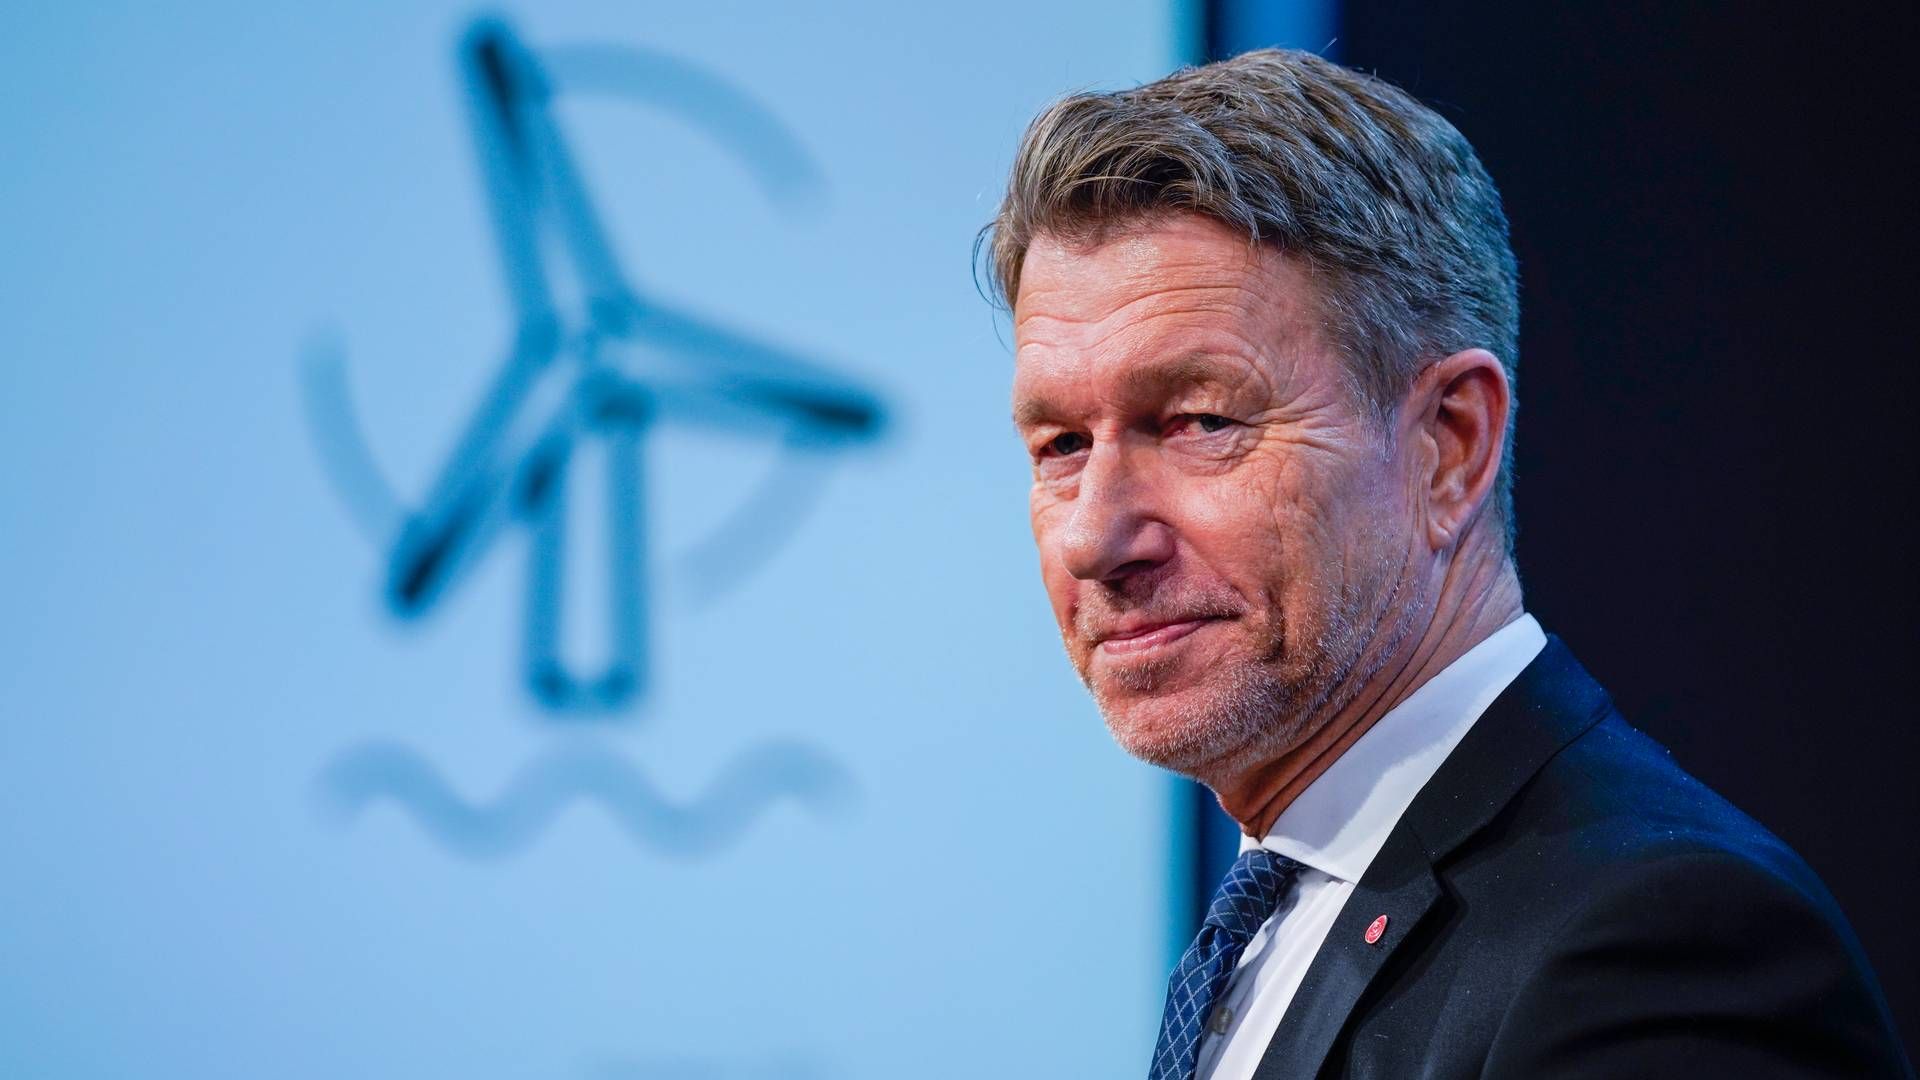 SATSER PÅ HAVVIND: Olje- og energiminister Terje Aasland la frem nye rammevilkår for havvind-satsning forrige uke. Noen av dem er før tøffe, selv for Statkraft.